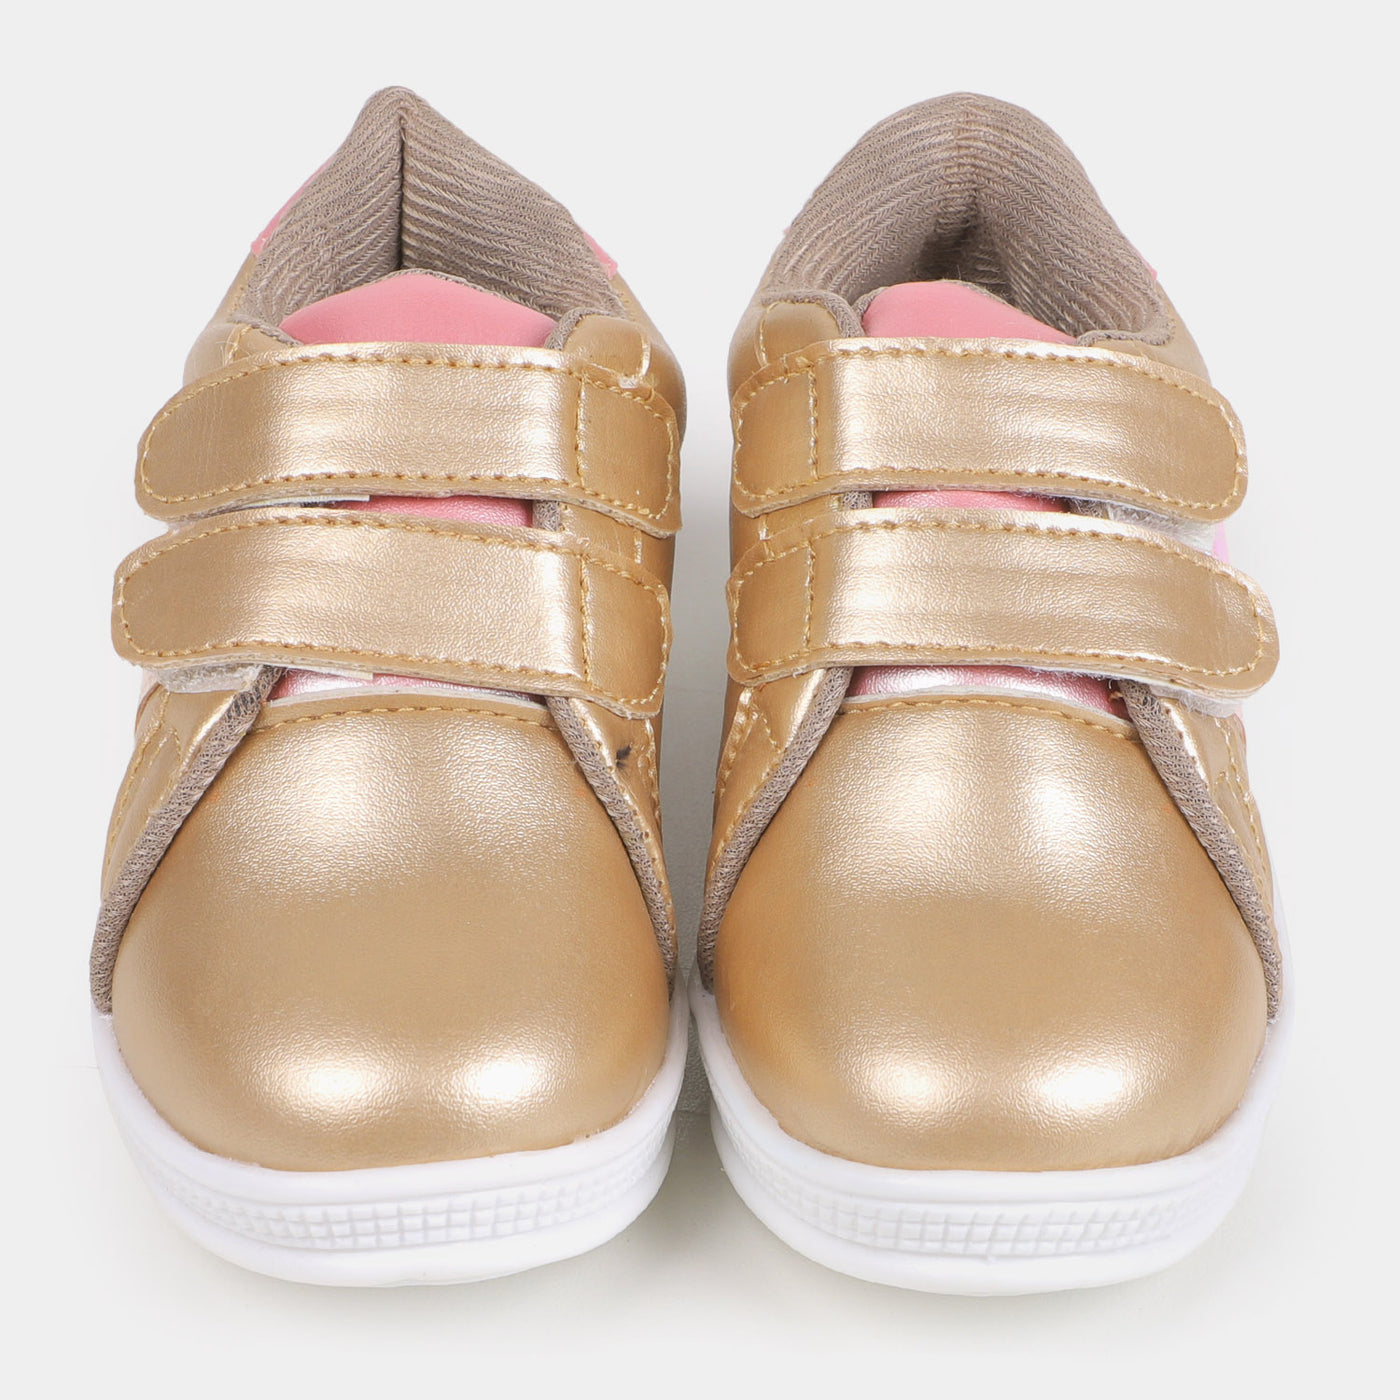 Girls Sneakers 203-3 - Golden